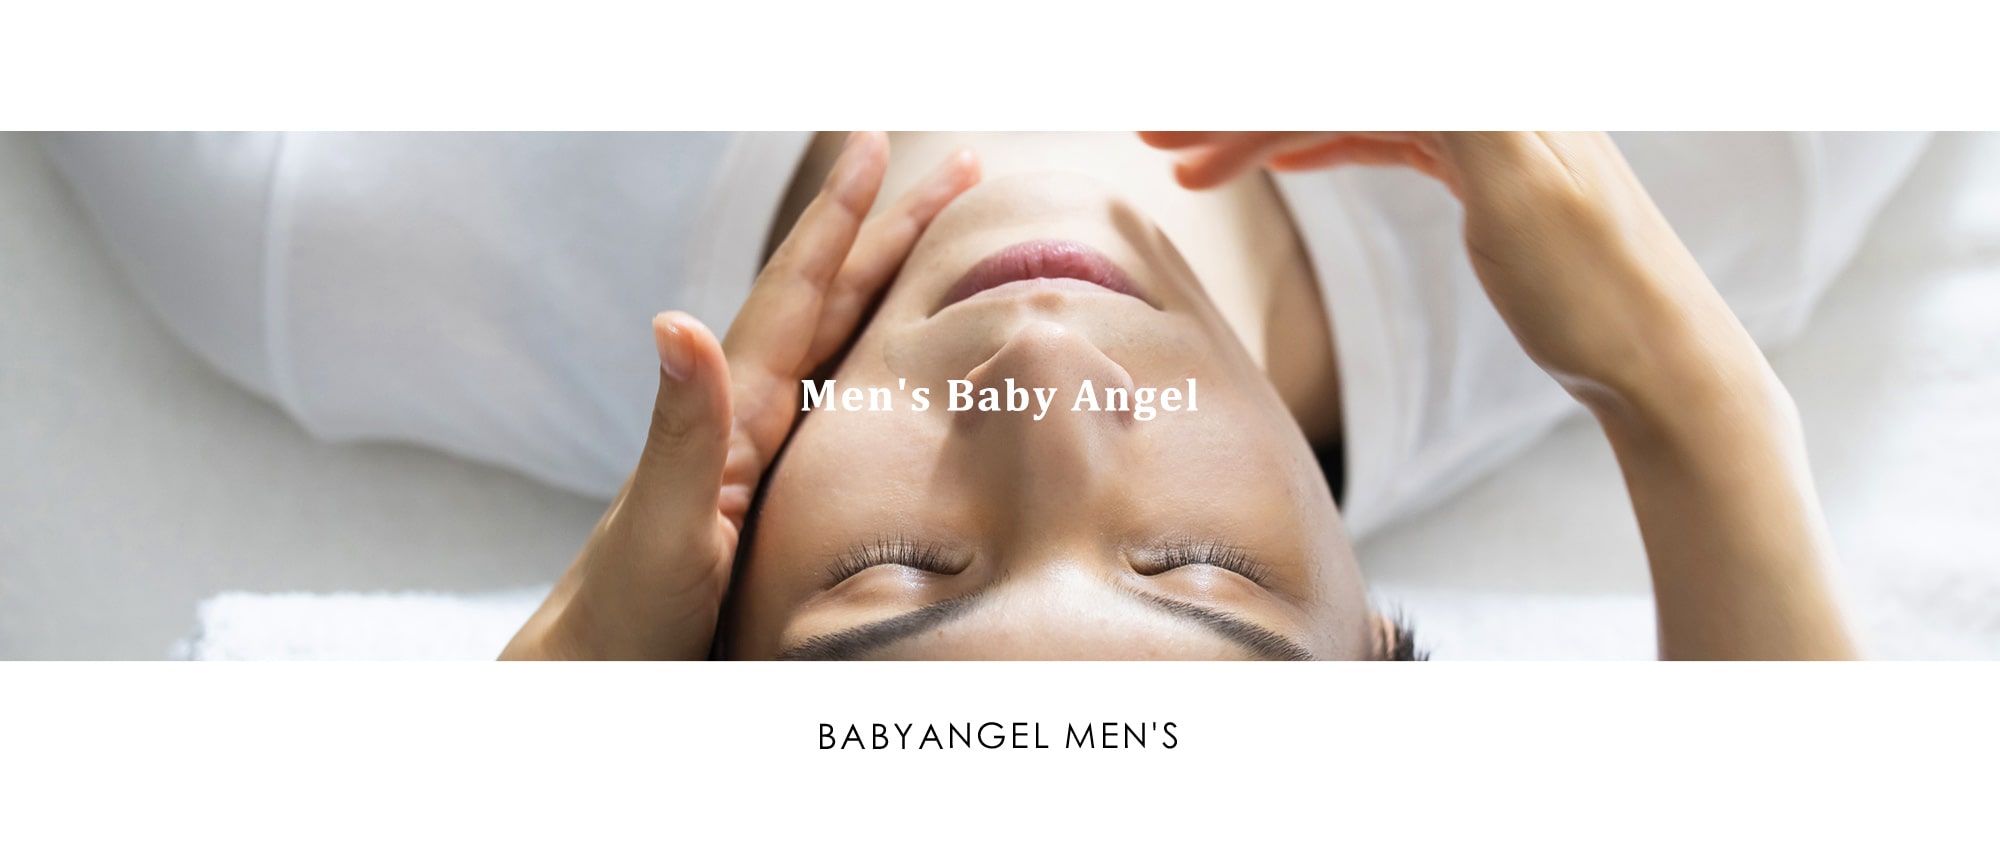 Men’s Baby Angel